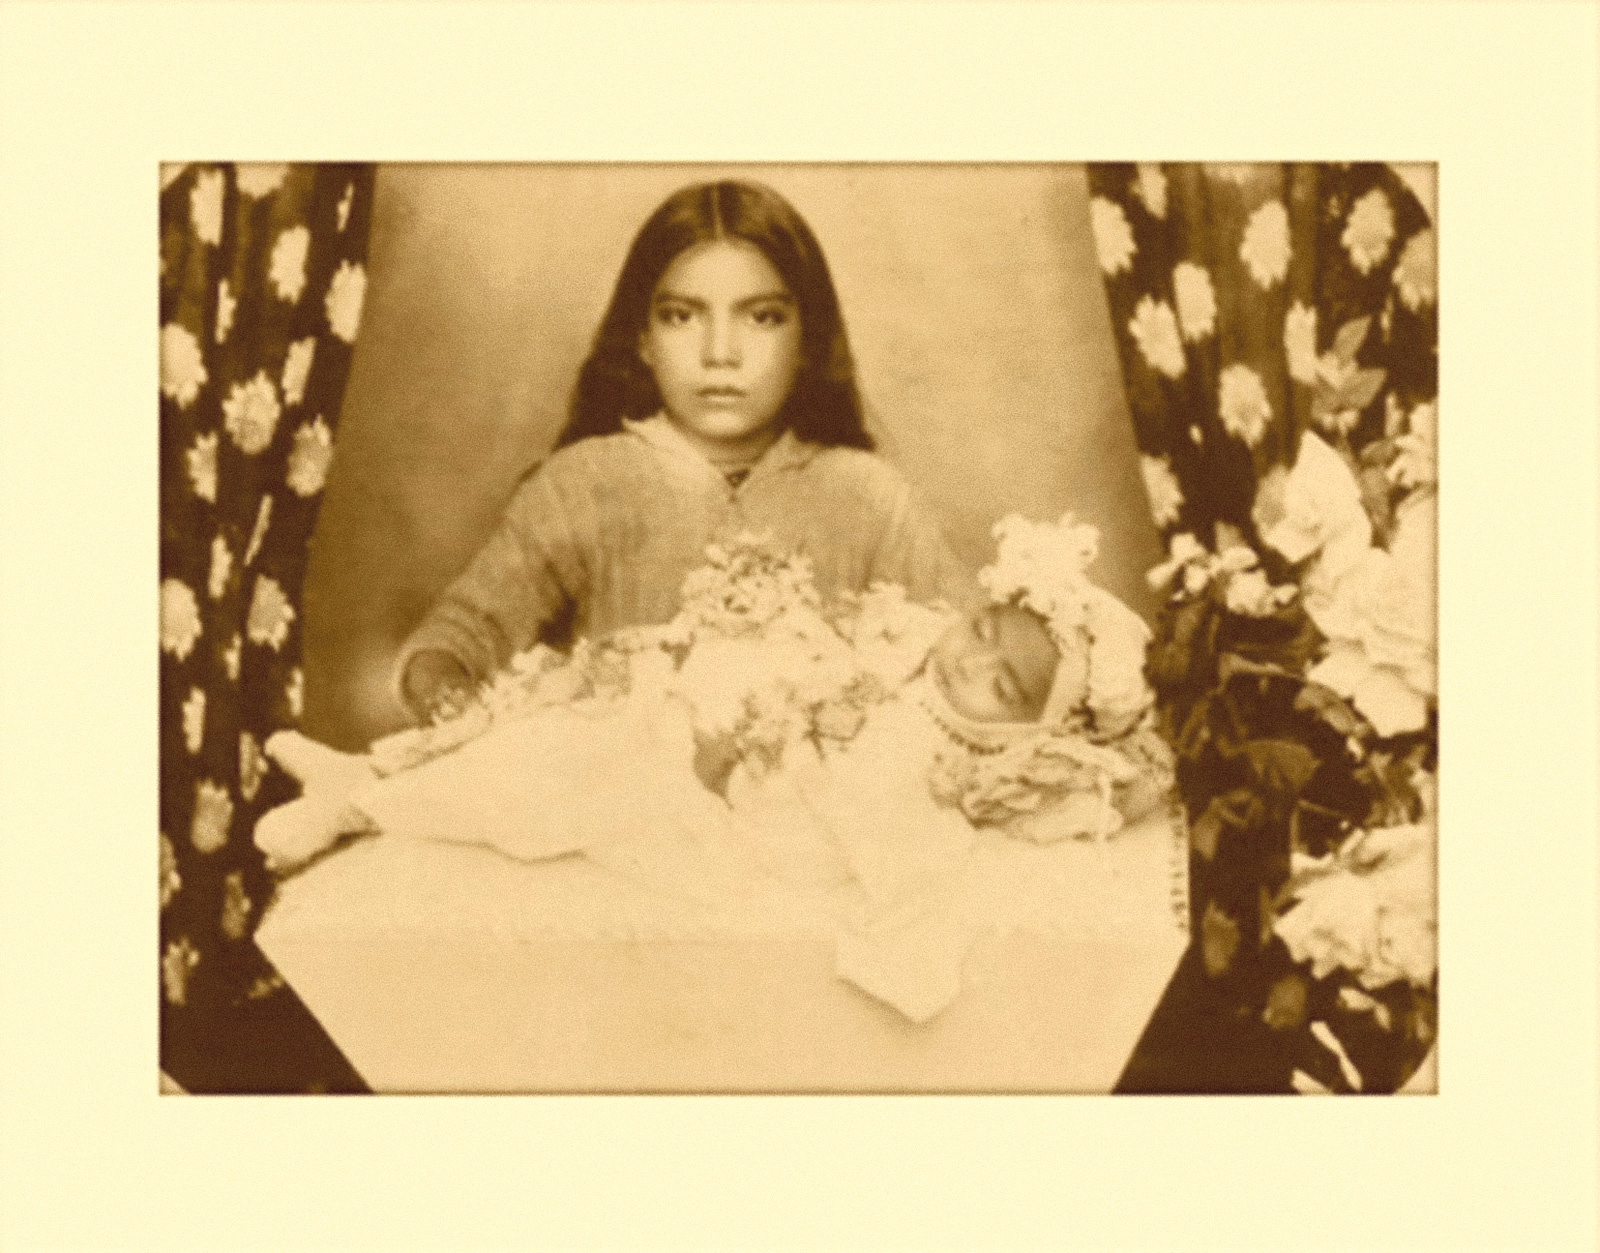 Juan de Dios Machain, *Retrato de angelito, ca*. 1905